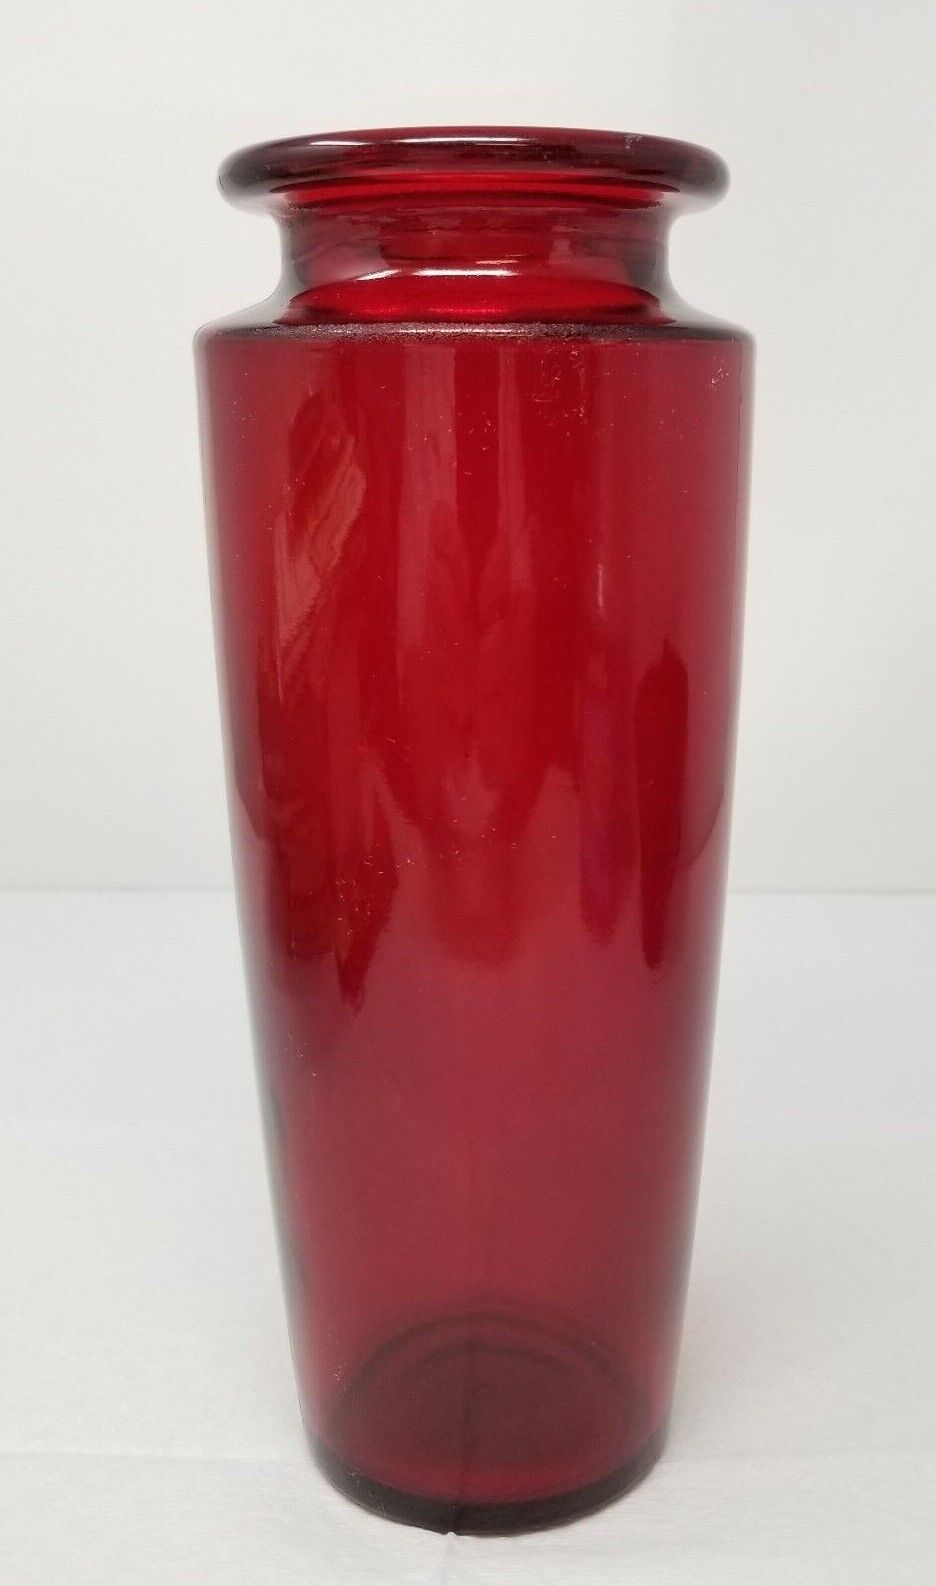 Vase Ruby Red Deep Bullet Cylinder Glass Vintage Imperfect